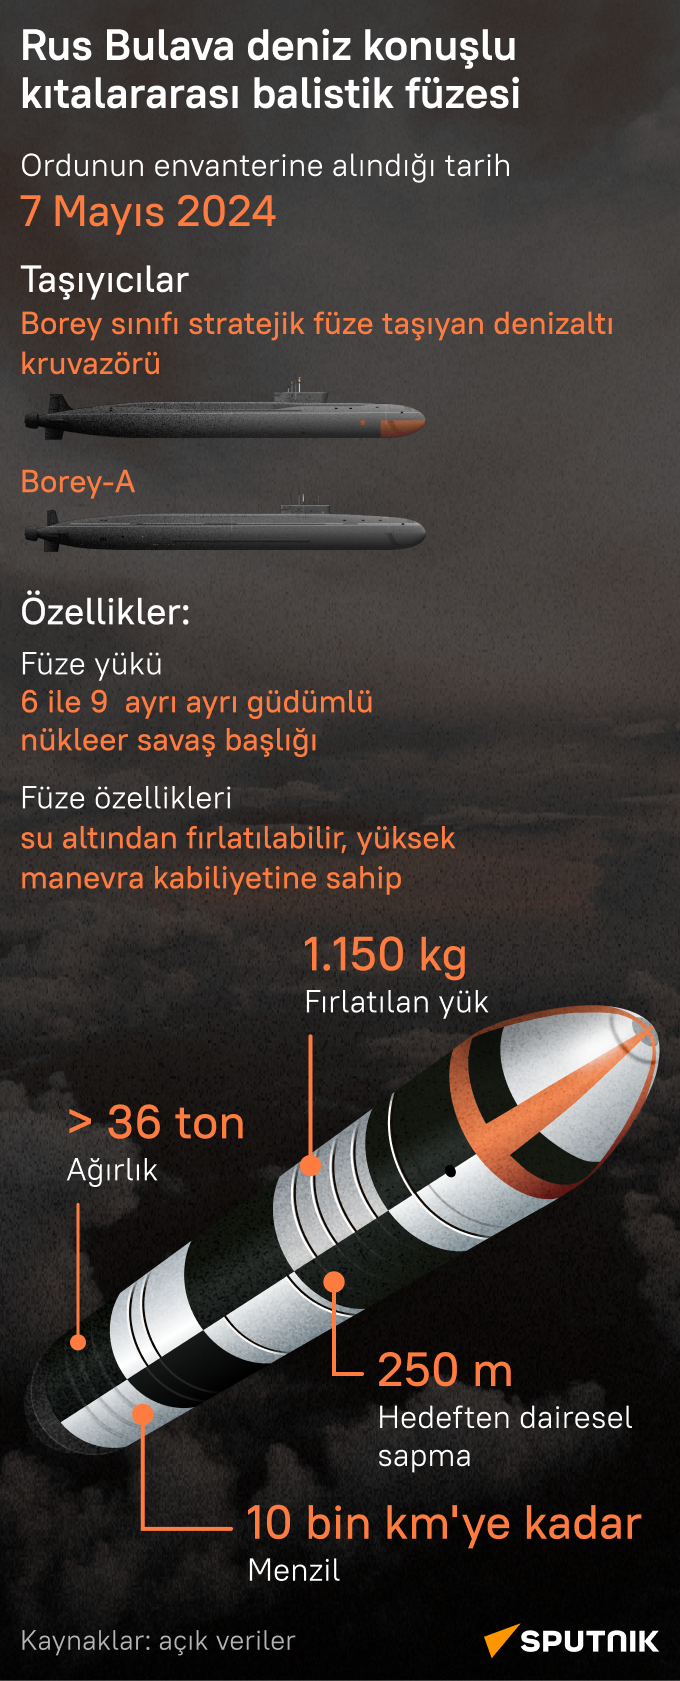 Rusya Deniz Kuvvetleri'nin envanterine giren Bulava balistik füzesinin teknik özellikleri neler? - Sputnik Türkiye